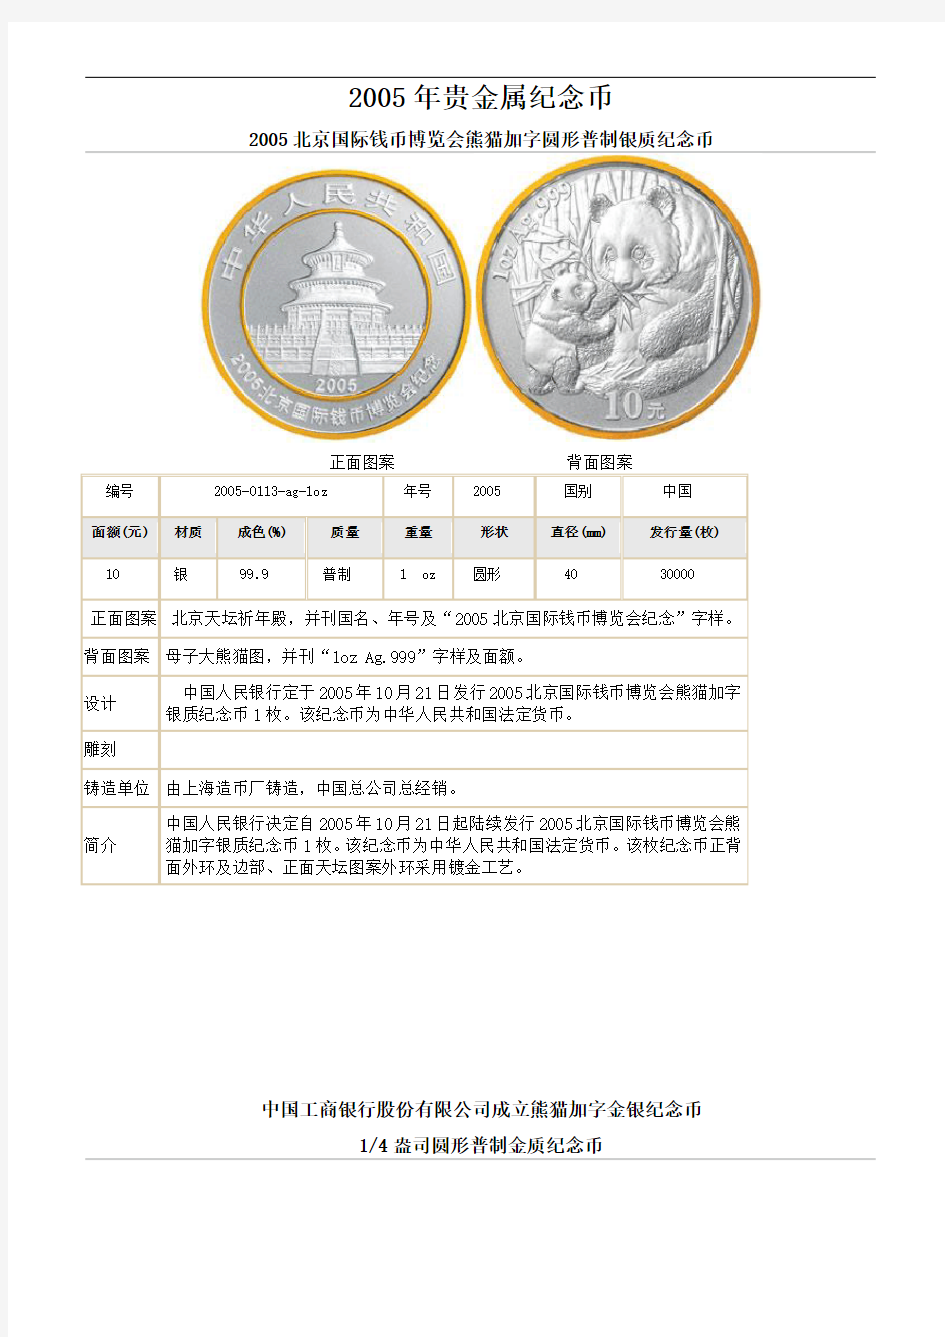 2005年贵金属纪念币图案